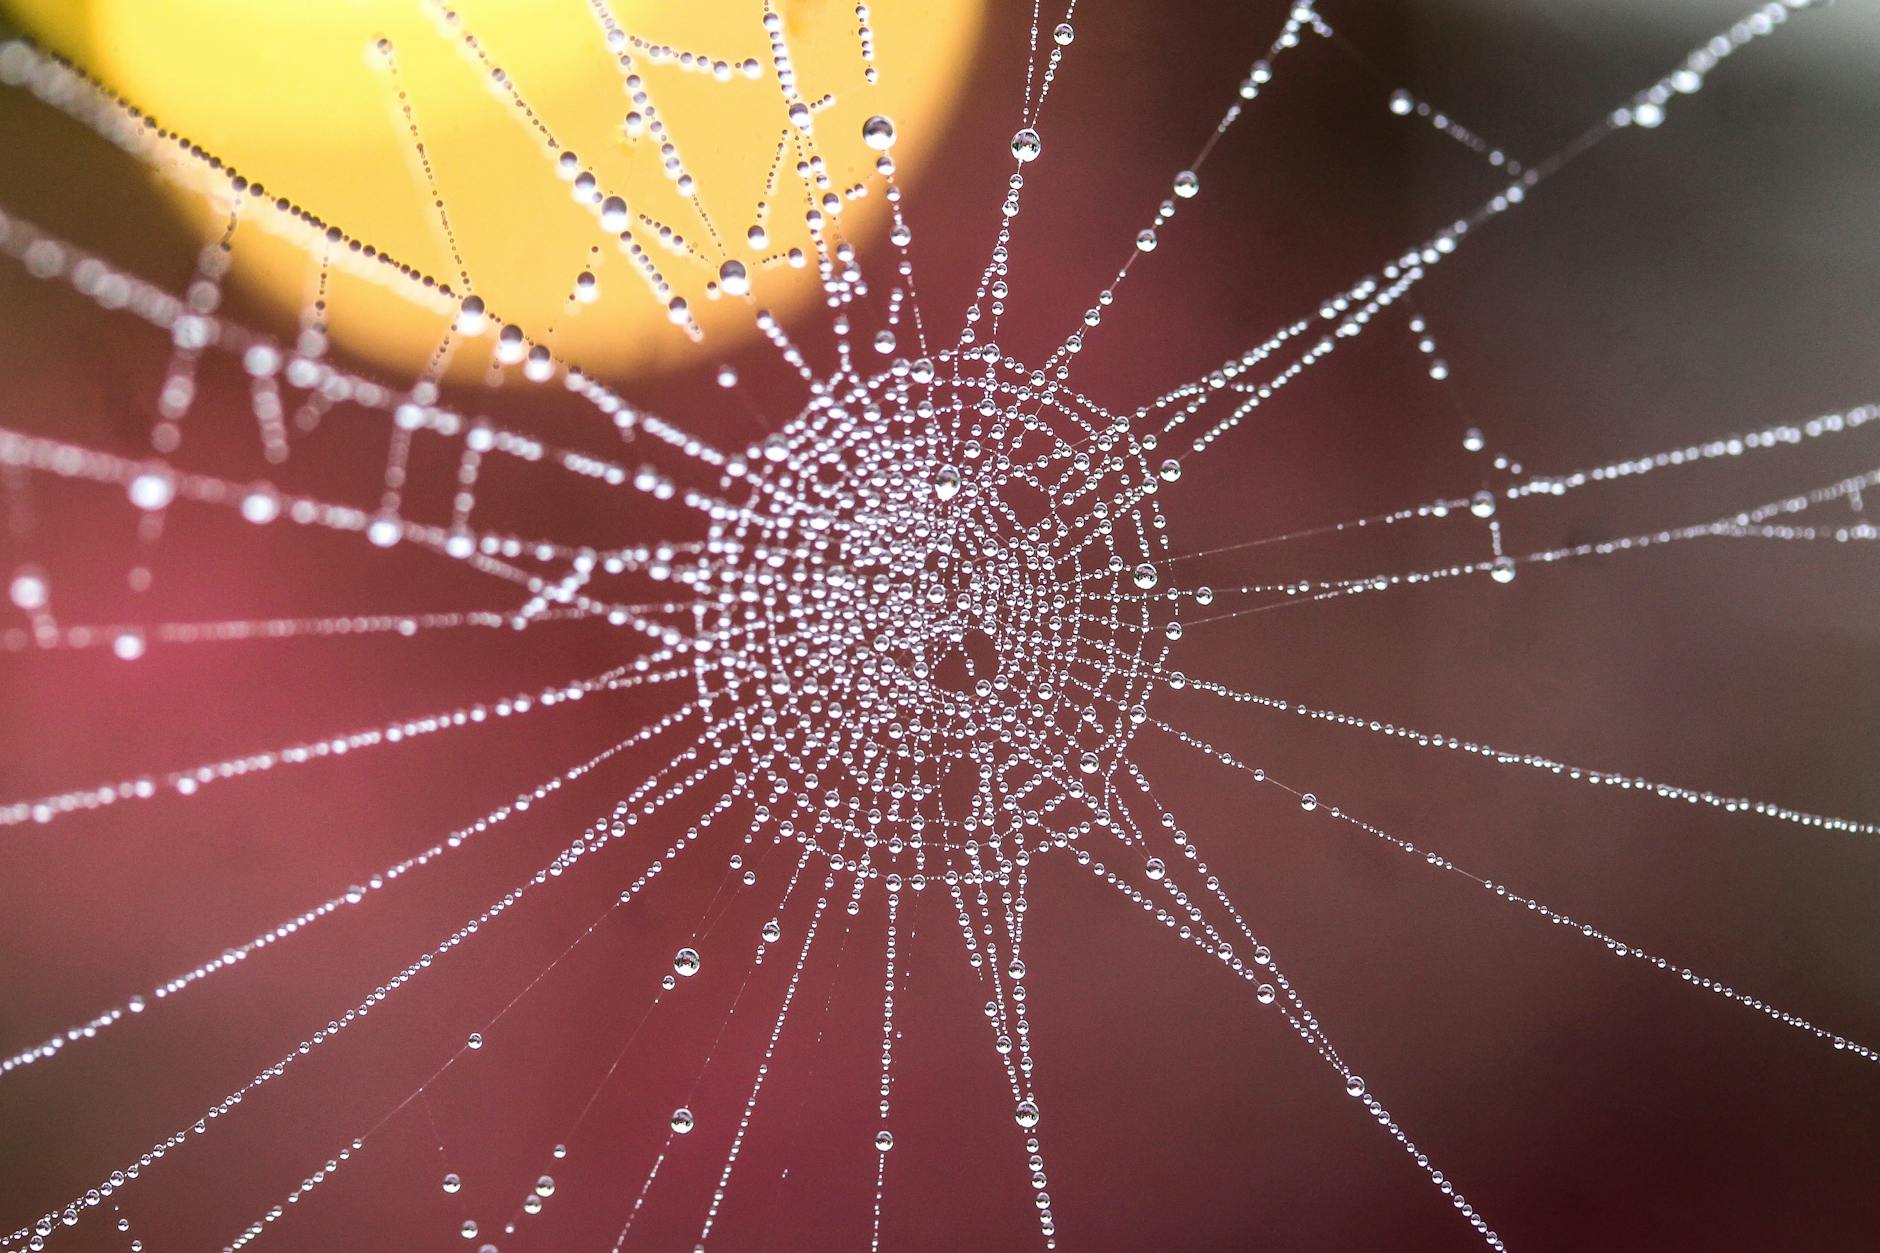 wet spiderweb